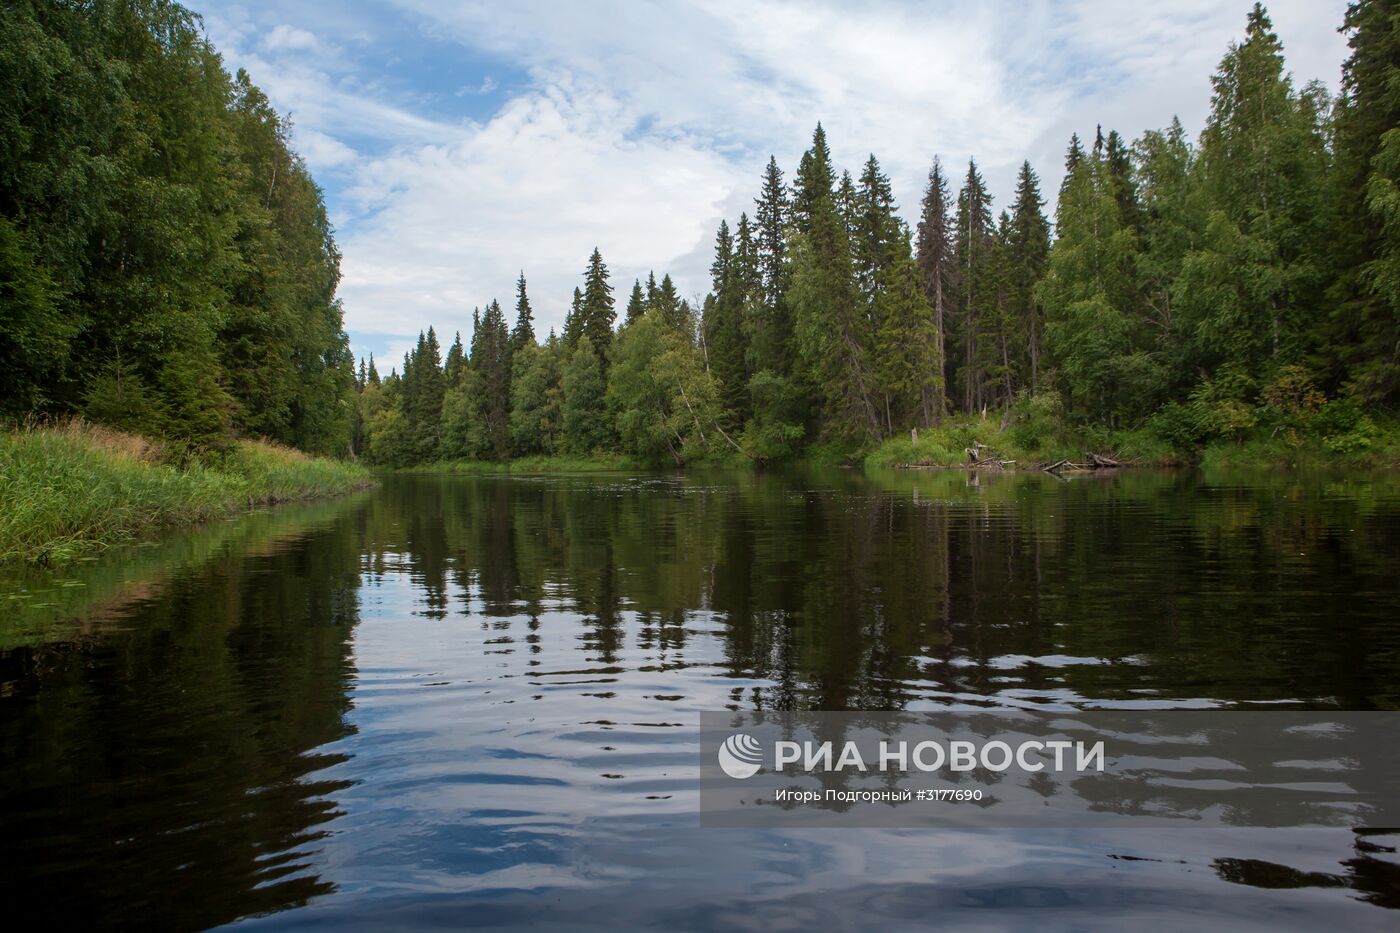 Водлозерский национальный парк в Архангельской области